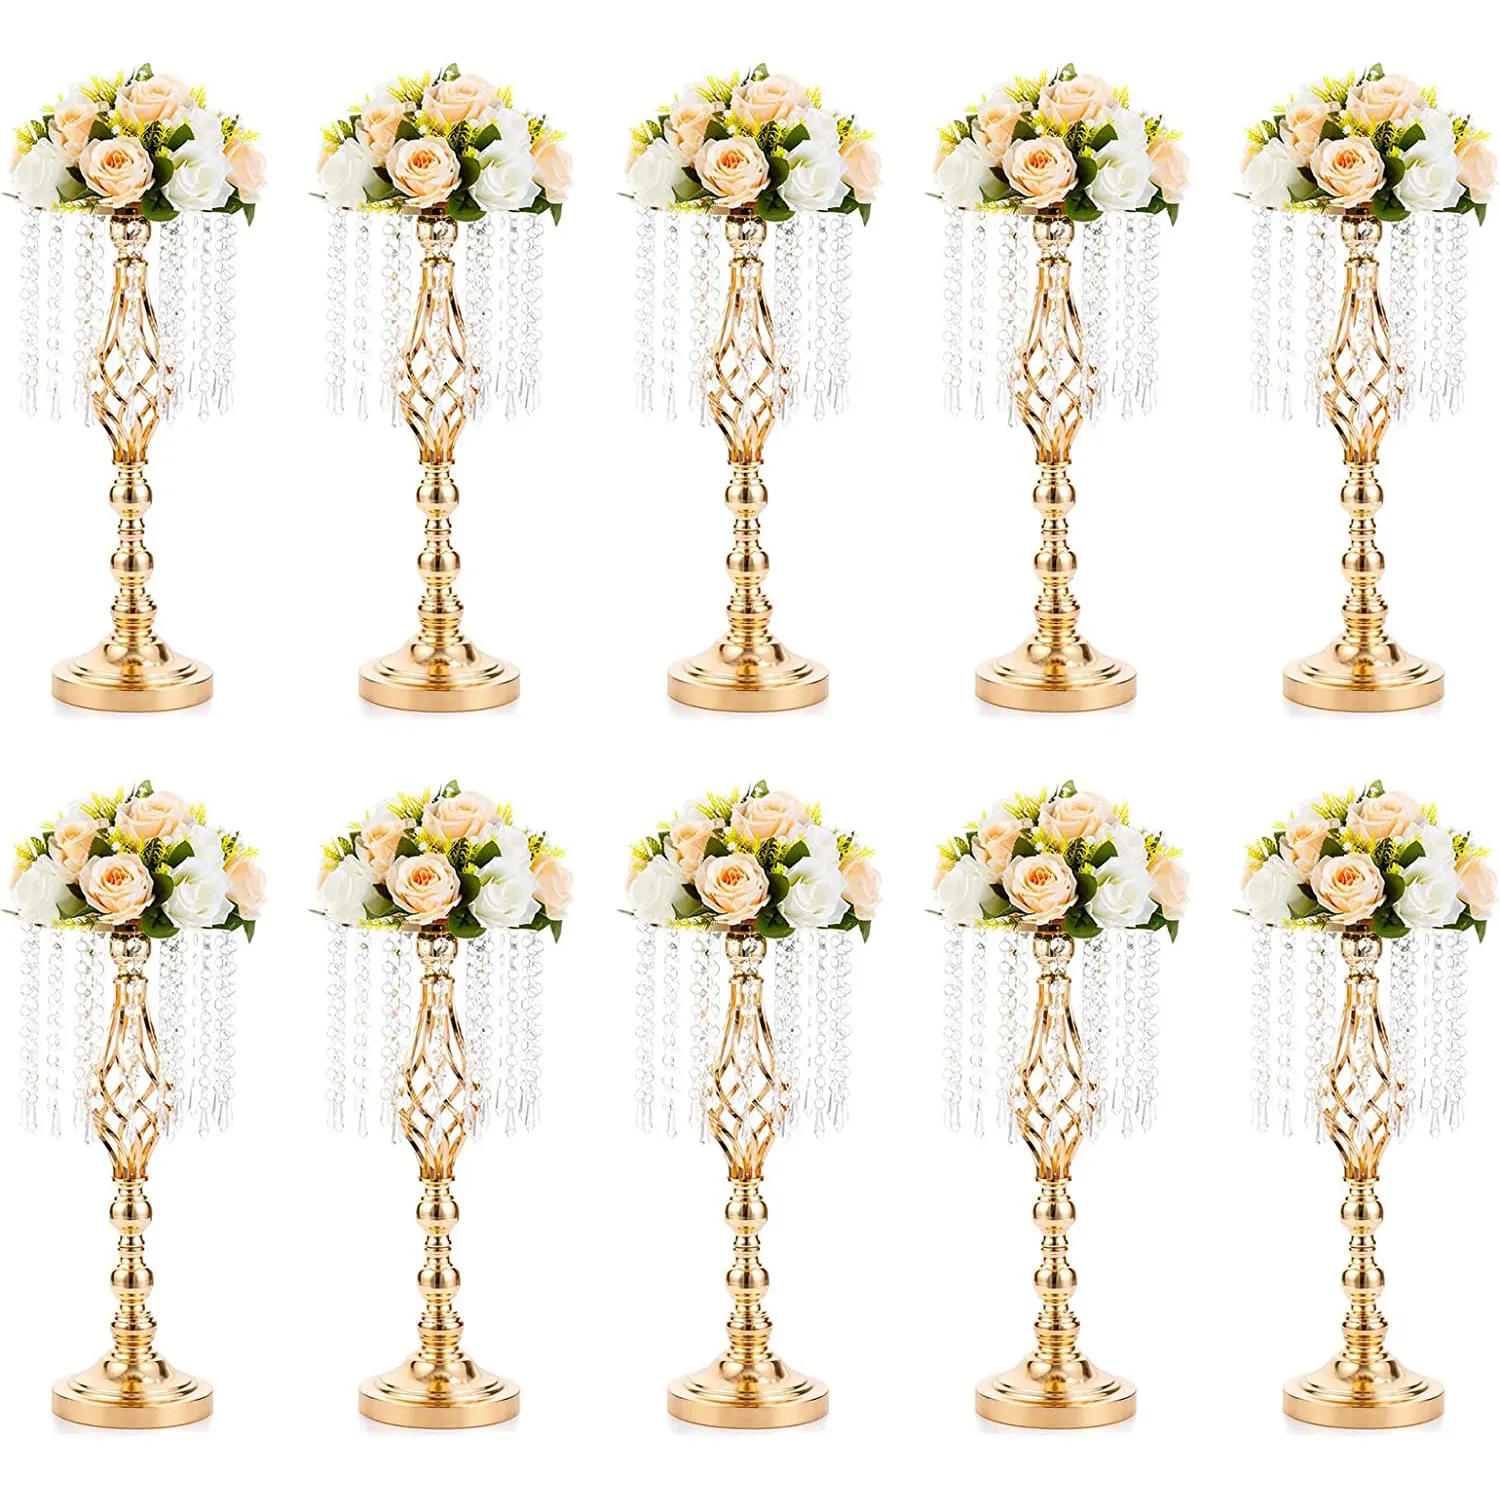 Nicro Hochzeits feier Tisch dekoration Luxus Metall Blumen regal Stand Blumen rahmen mit Kristall kette für Hotel Home Decoration